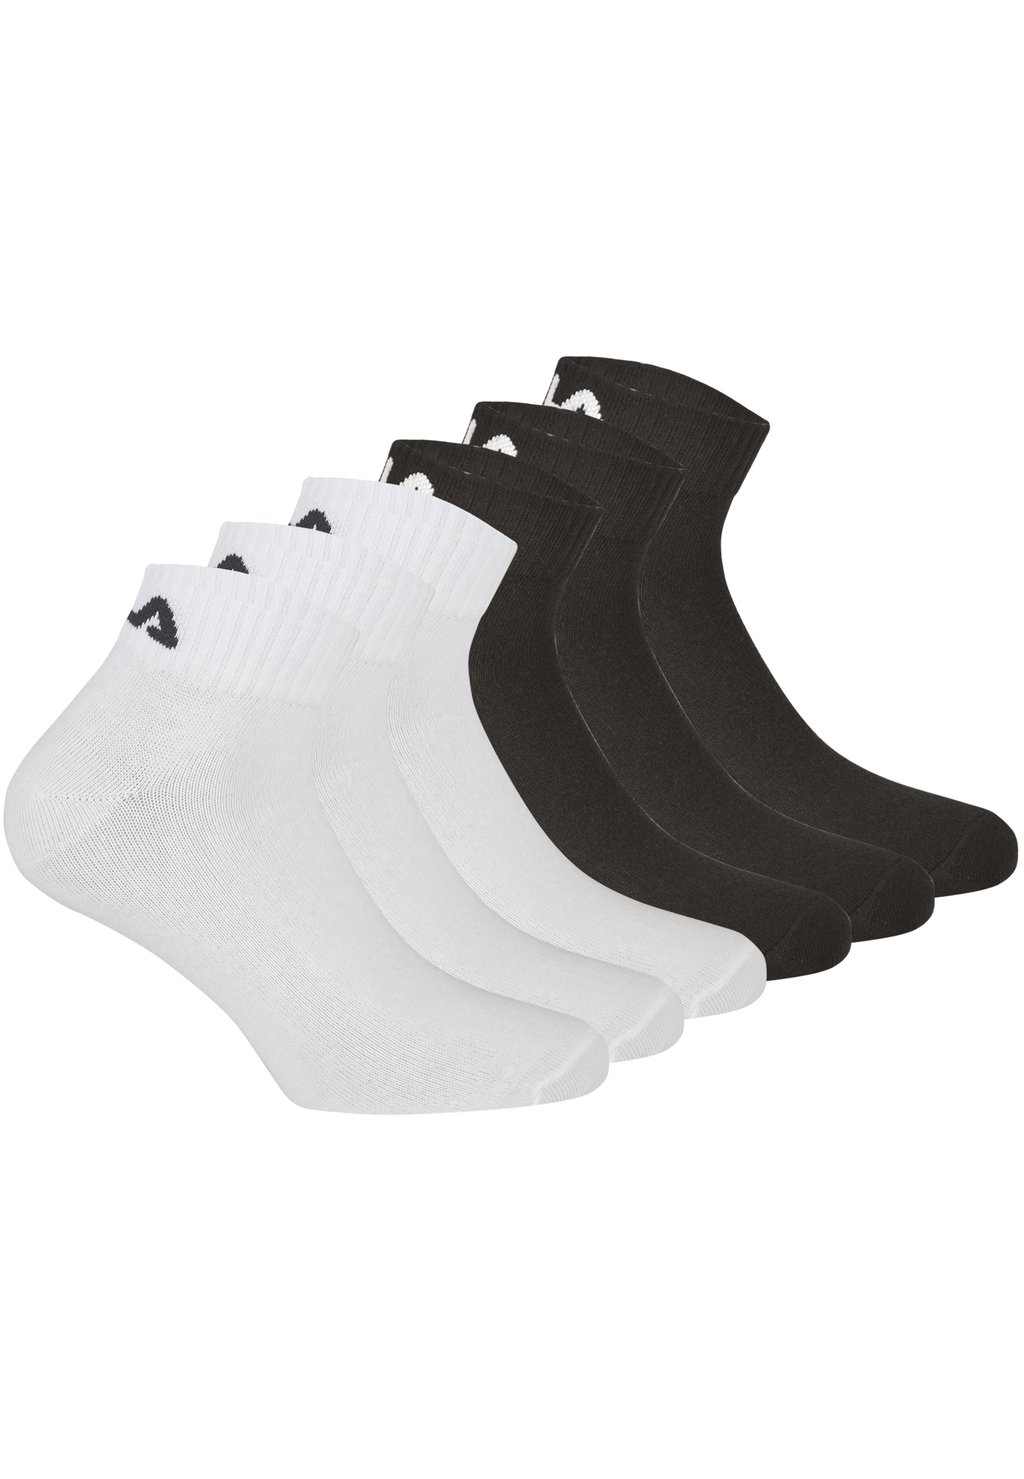 Носки QUARTER SOCKS 6 PACK Fila, цвет black white носки quarter socks unisex 6 pack fila цвет navy